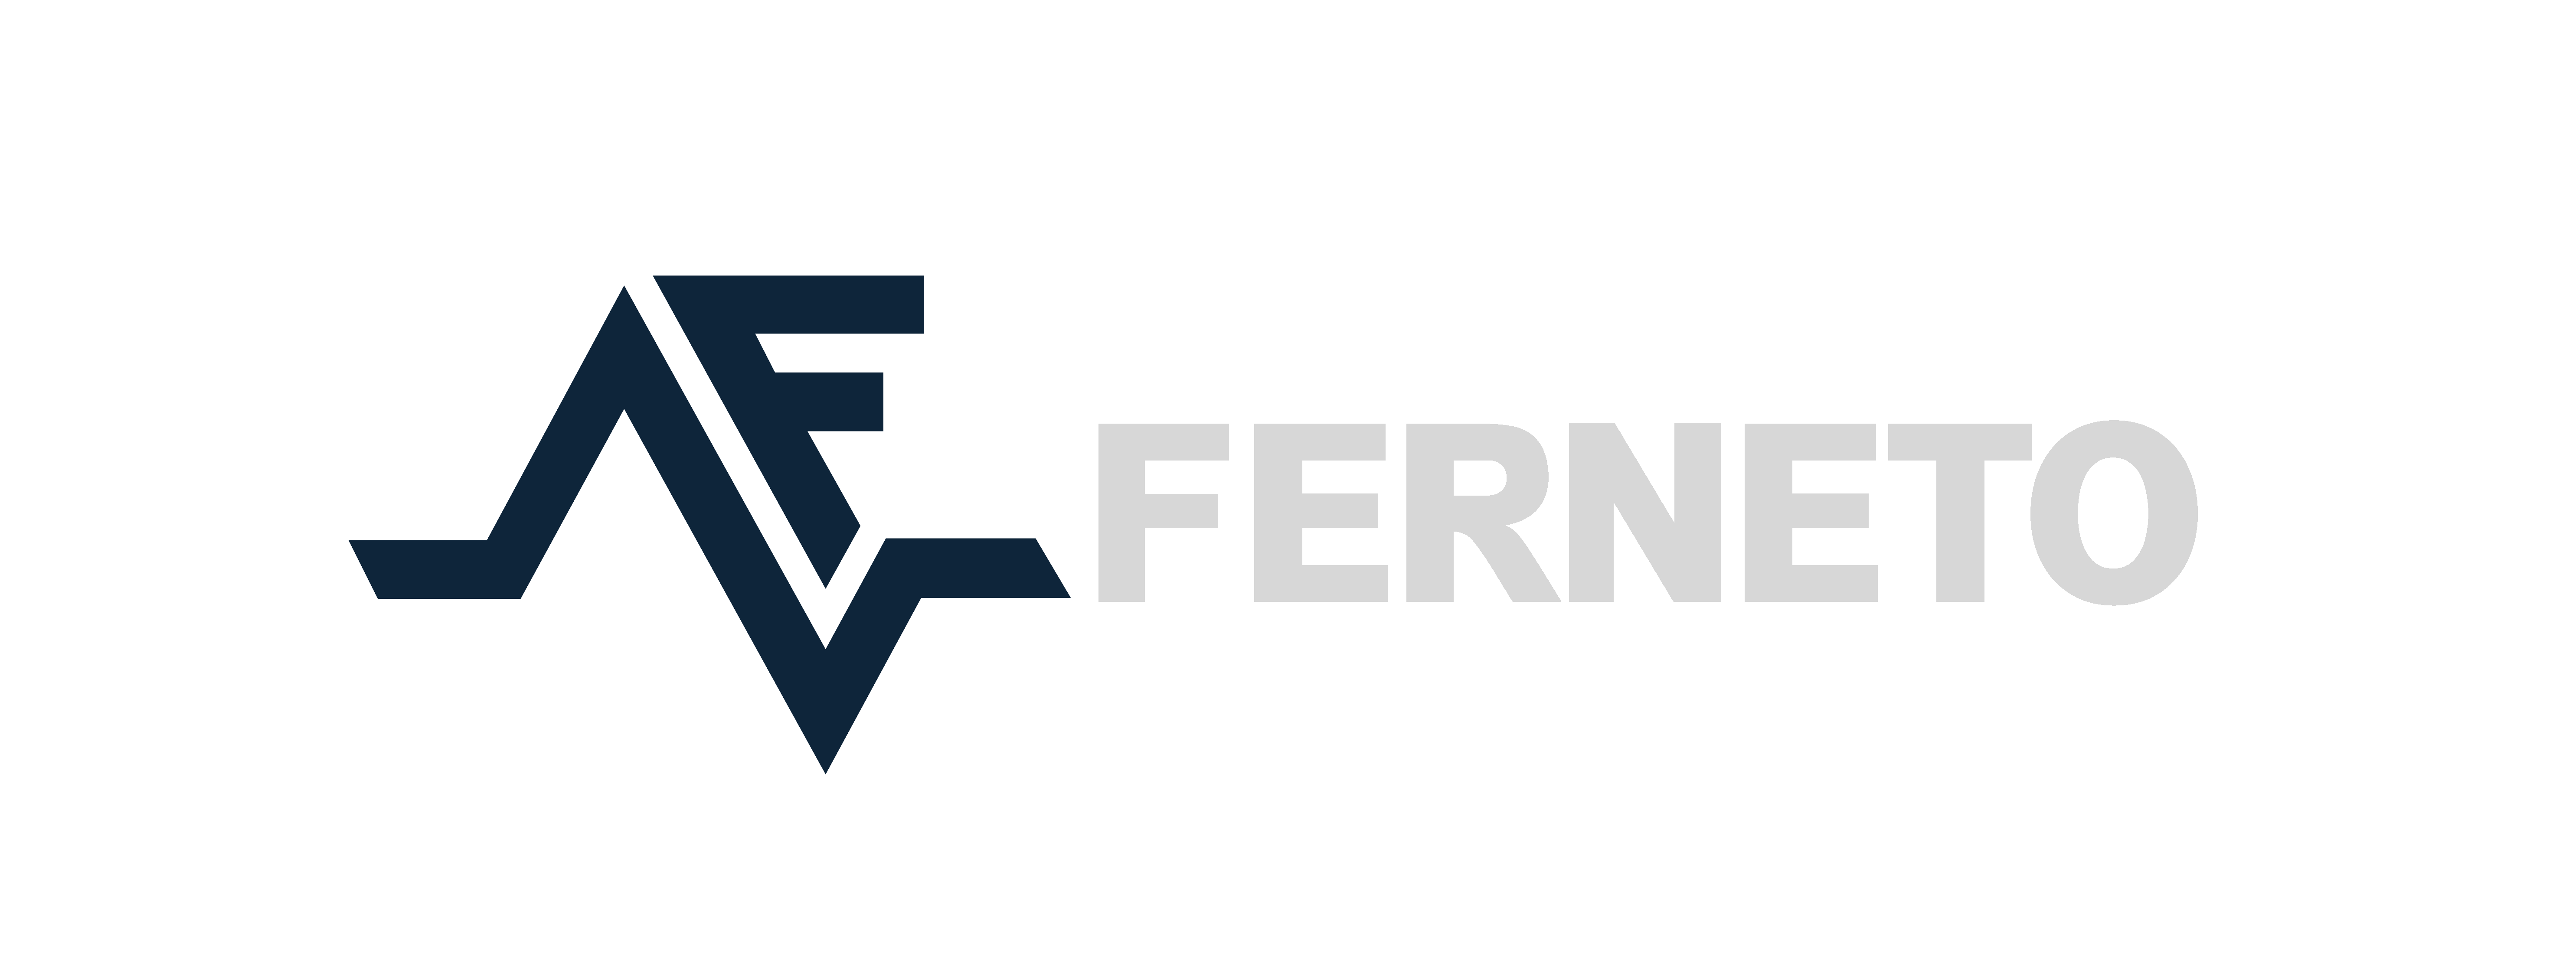 Ferneto